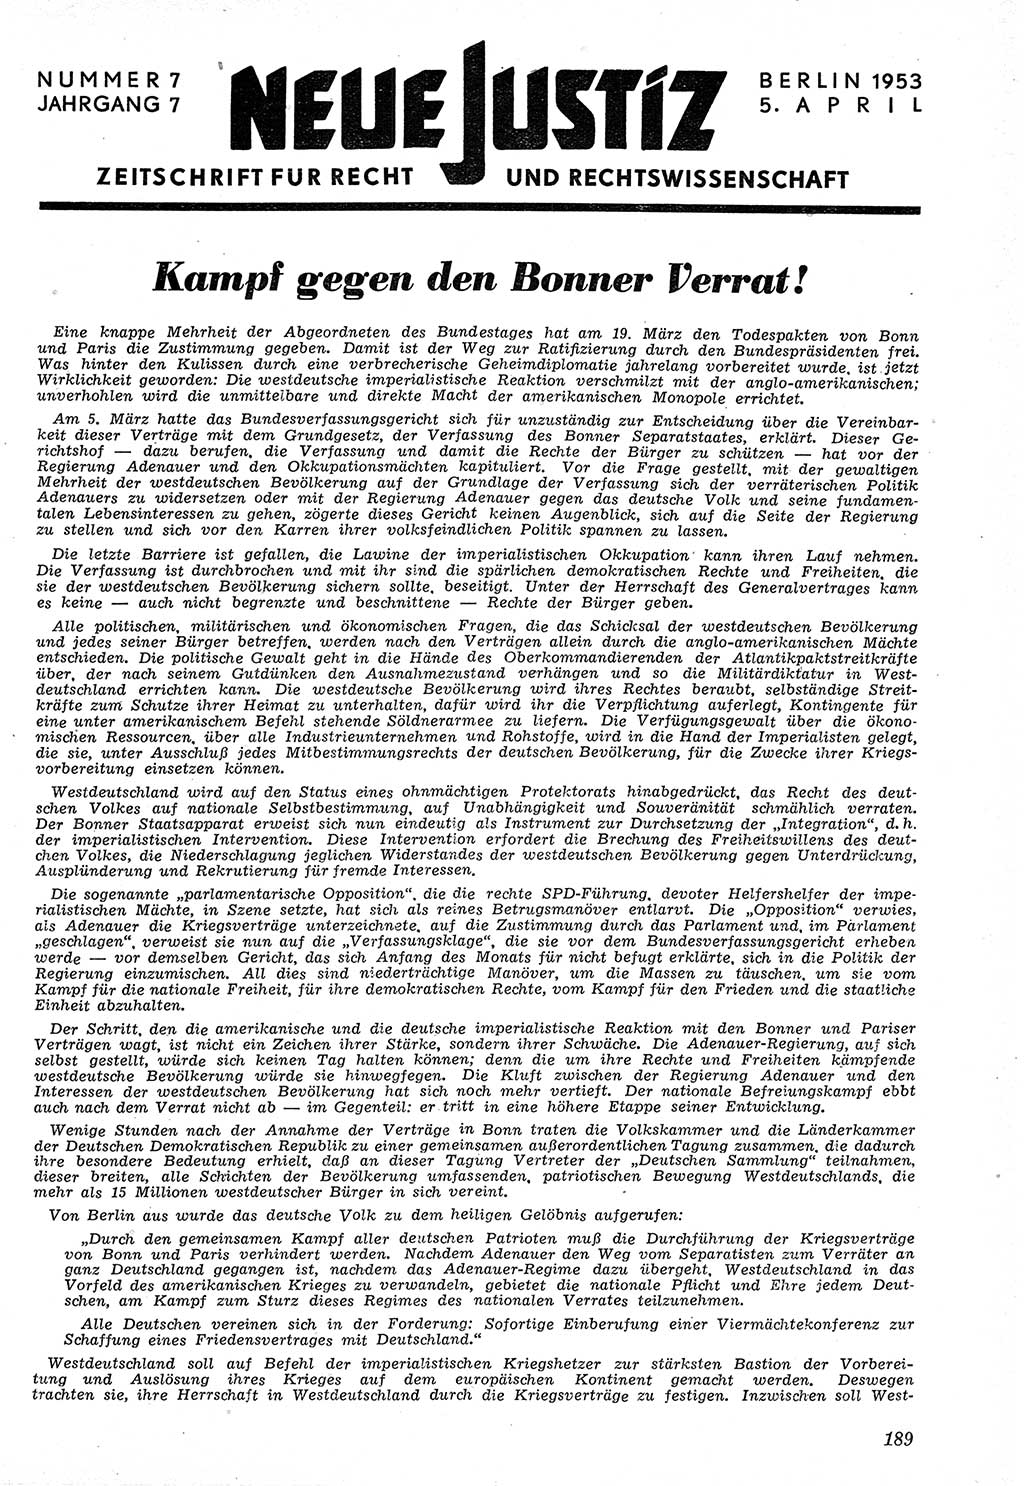 Neue Justiz (NJ), Zeitschrift für Recht und Rechtswissenschaft [Deutsche Demokratische Republik (DDR)], 7. Jahrgang 1953, Seite 189 (NJ DDR 1953, S. 189)